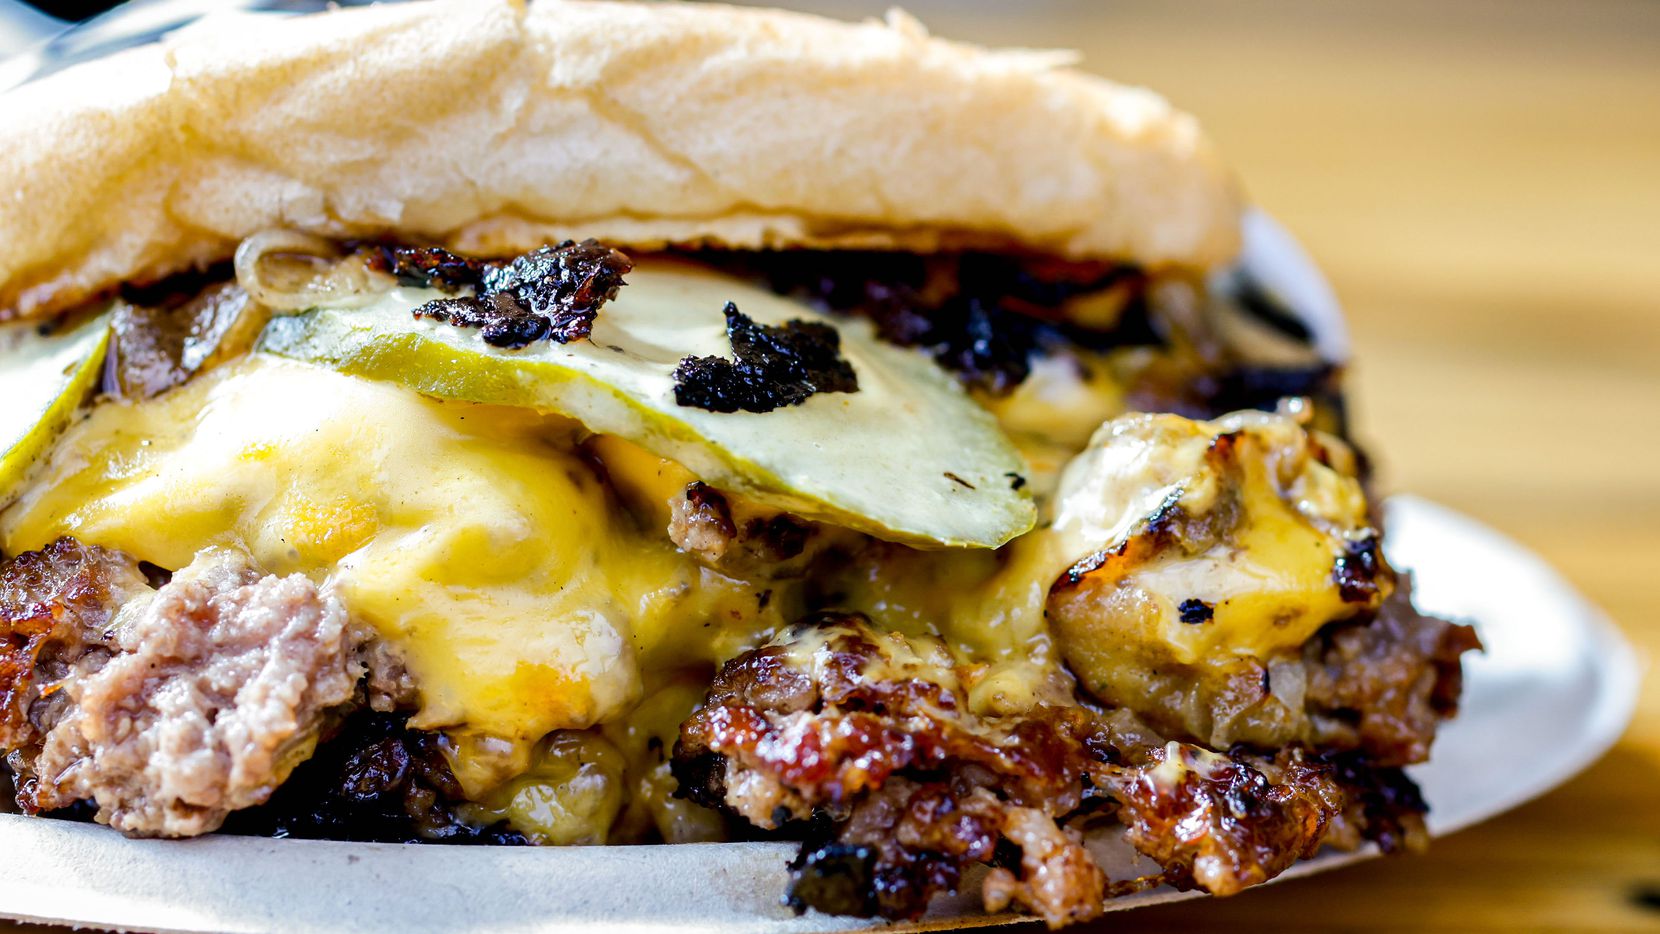 Burger Schmurger's flagship burger is the Schmurger, a double patty, double cheese delight...